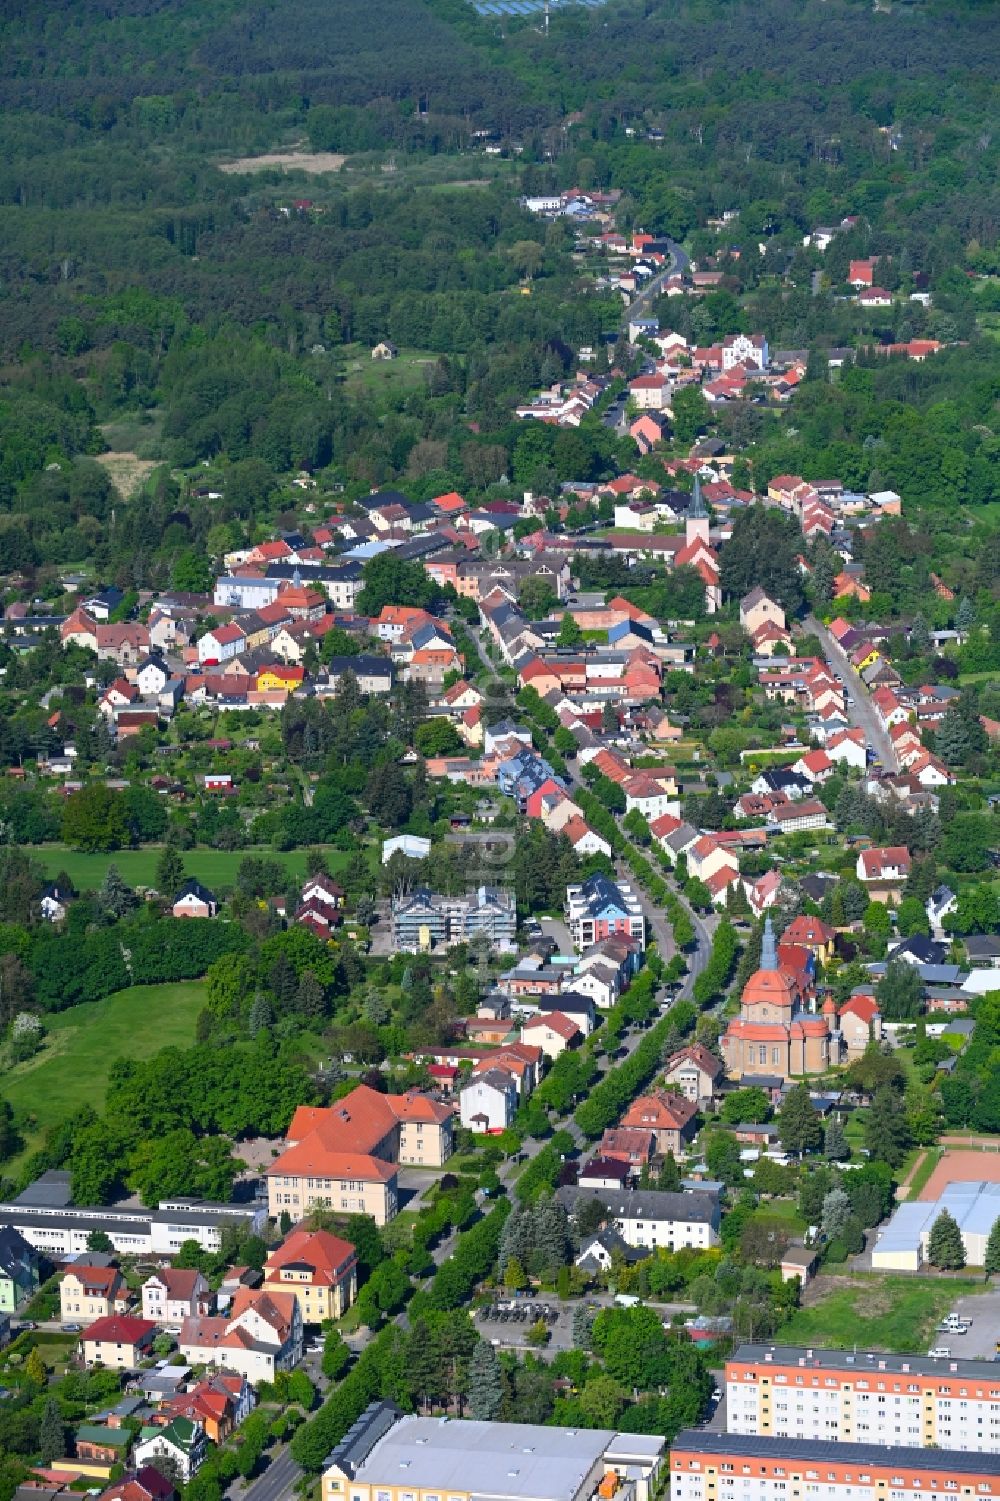 Luftbild Biesenthal - Ortsansicht in Biesenthal im Bundesland Brandenburg, Deutschland